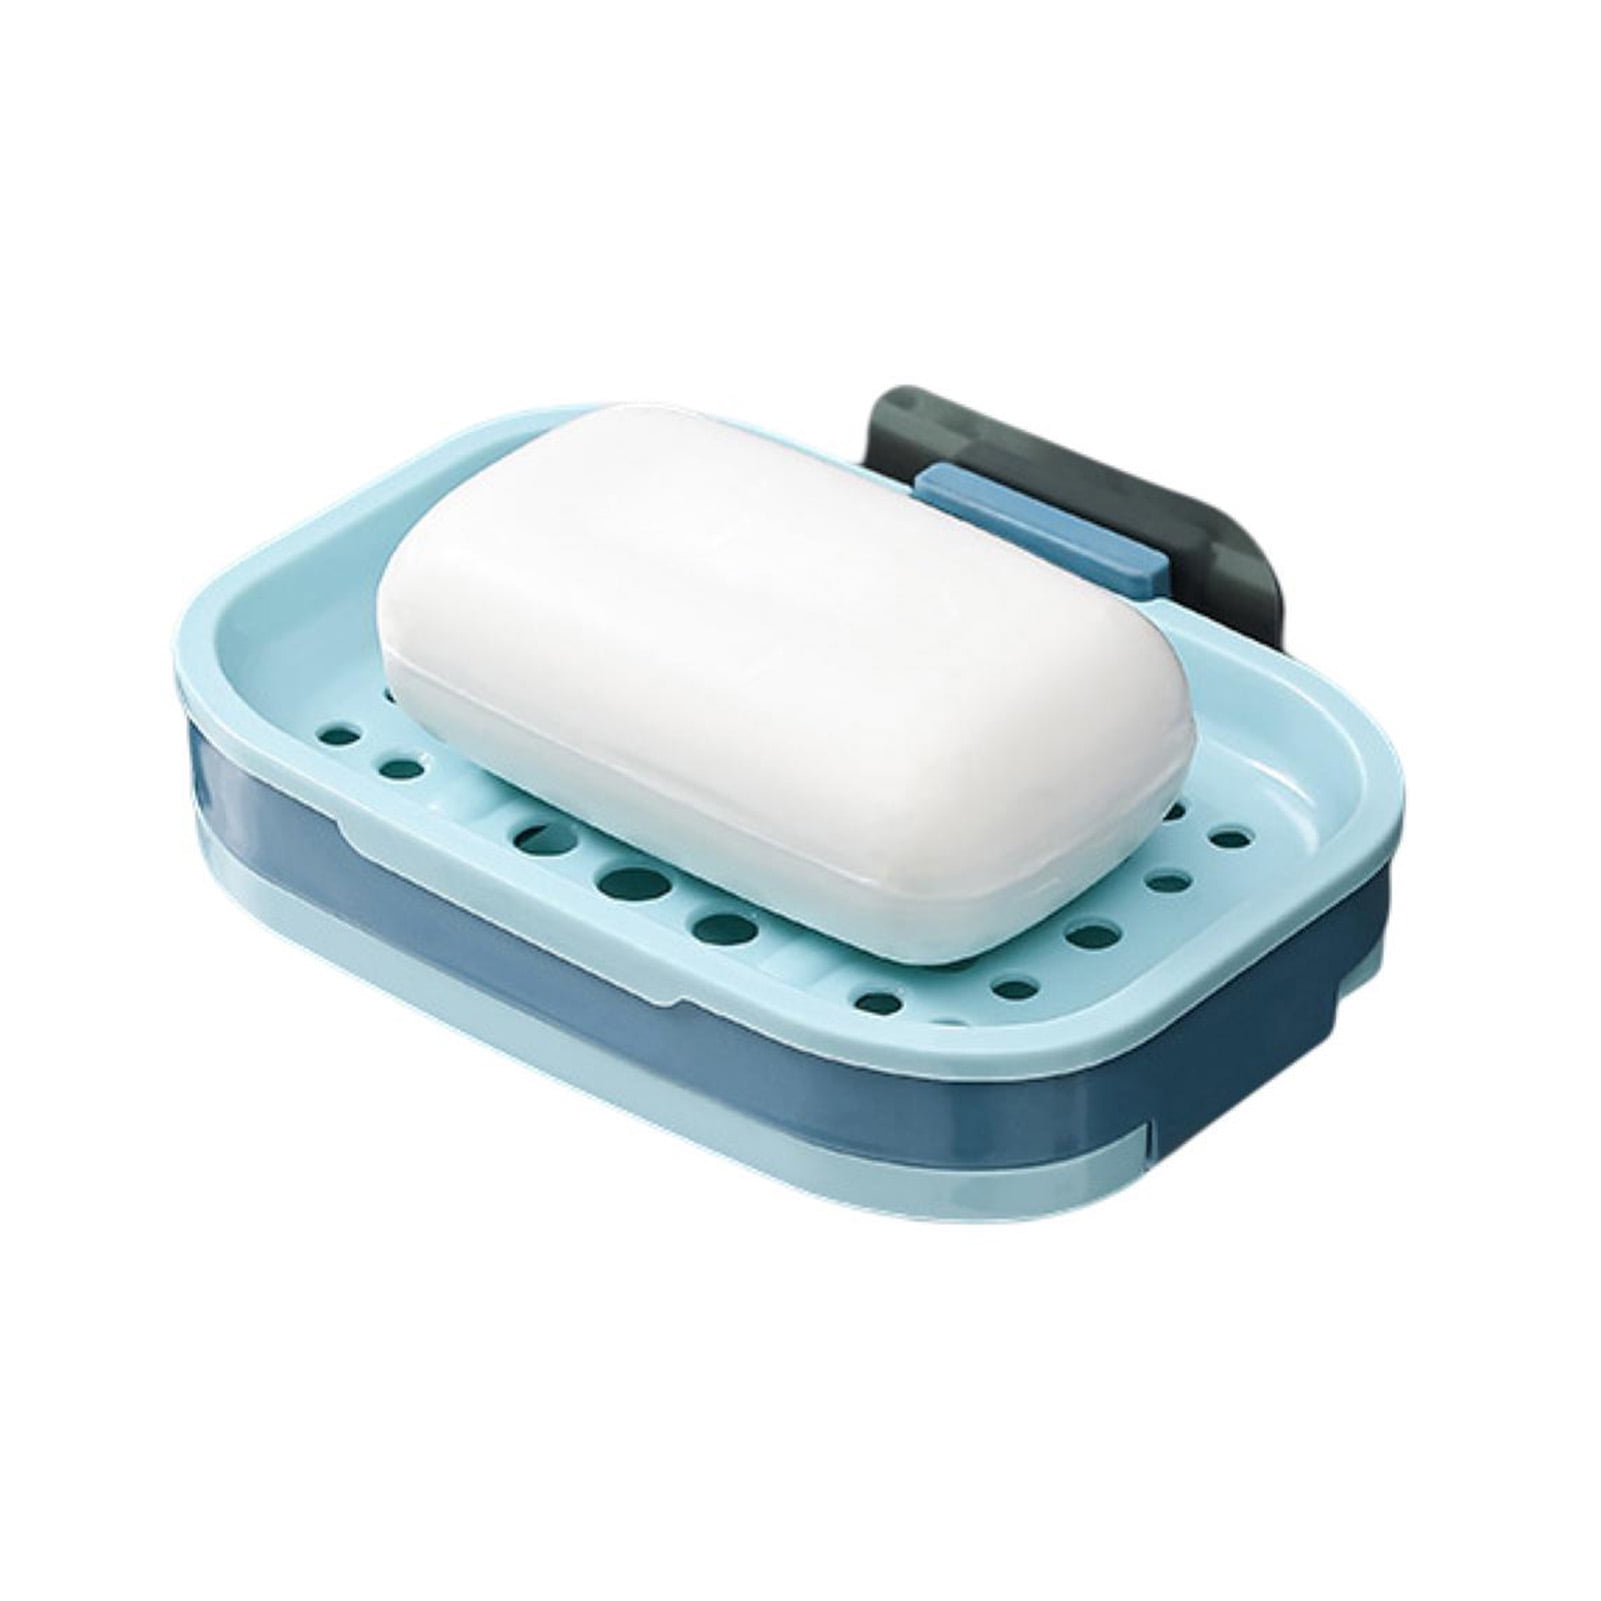 2 PCS Soap Dish for Shower Wall, Black Self-Adhesive Bar Soap